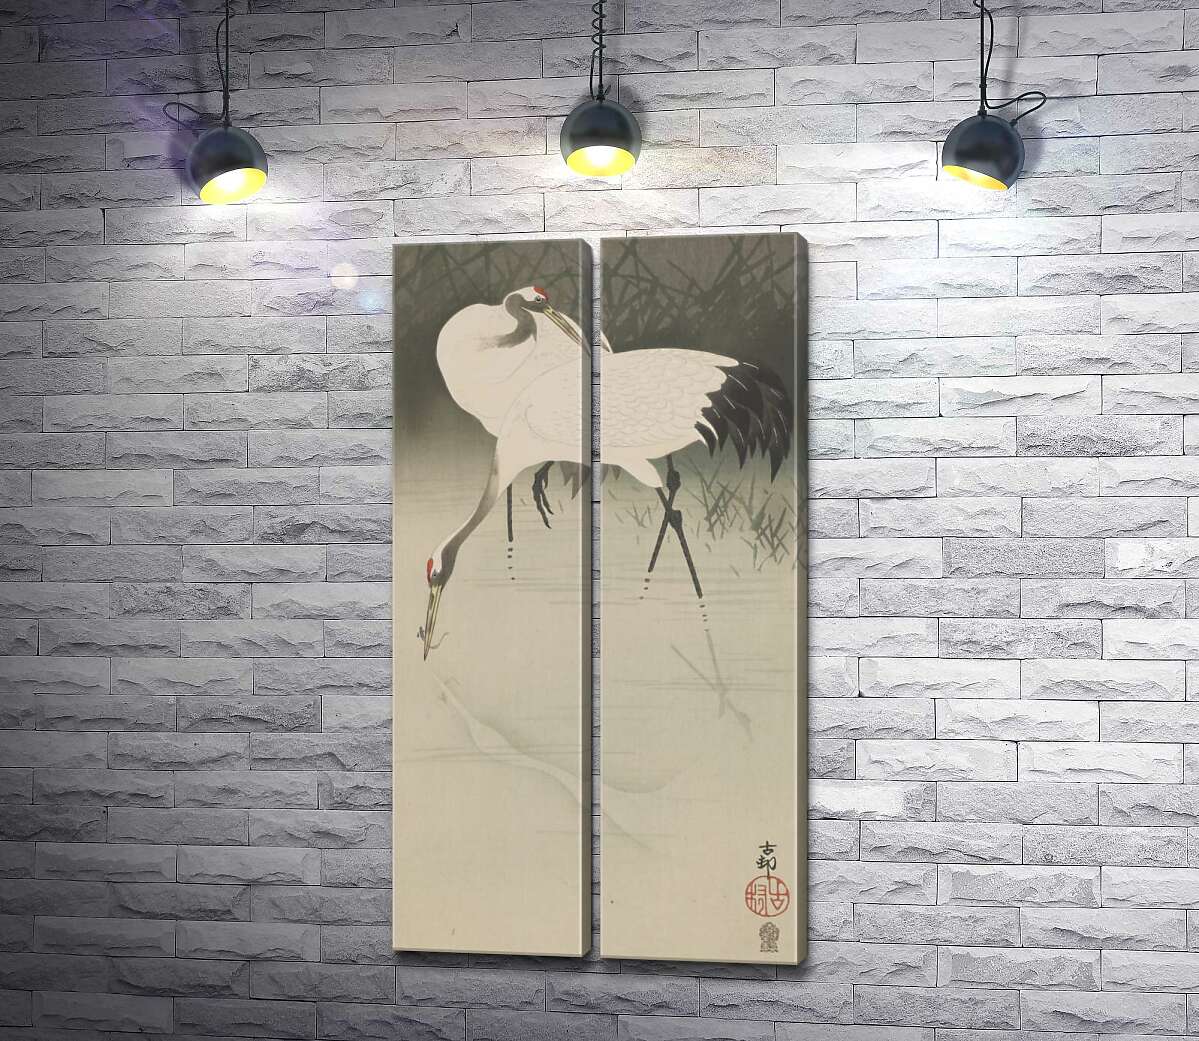 модульна картина Пара журавлів в очереті (Pair of cranes in reeds) - Охара Косон (Ohara Koson)